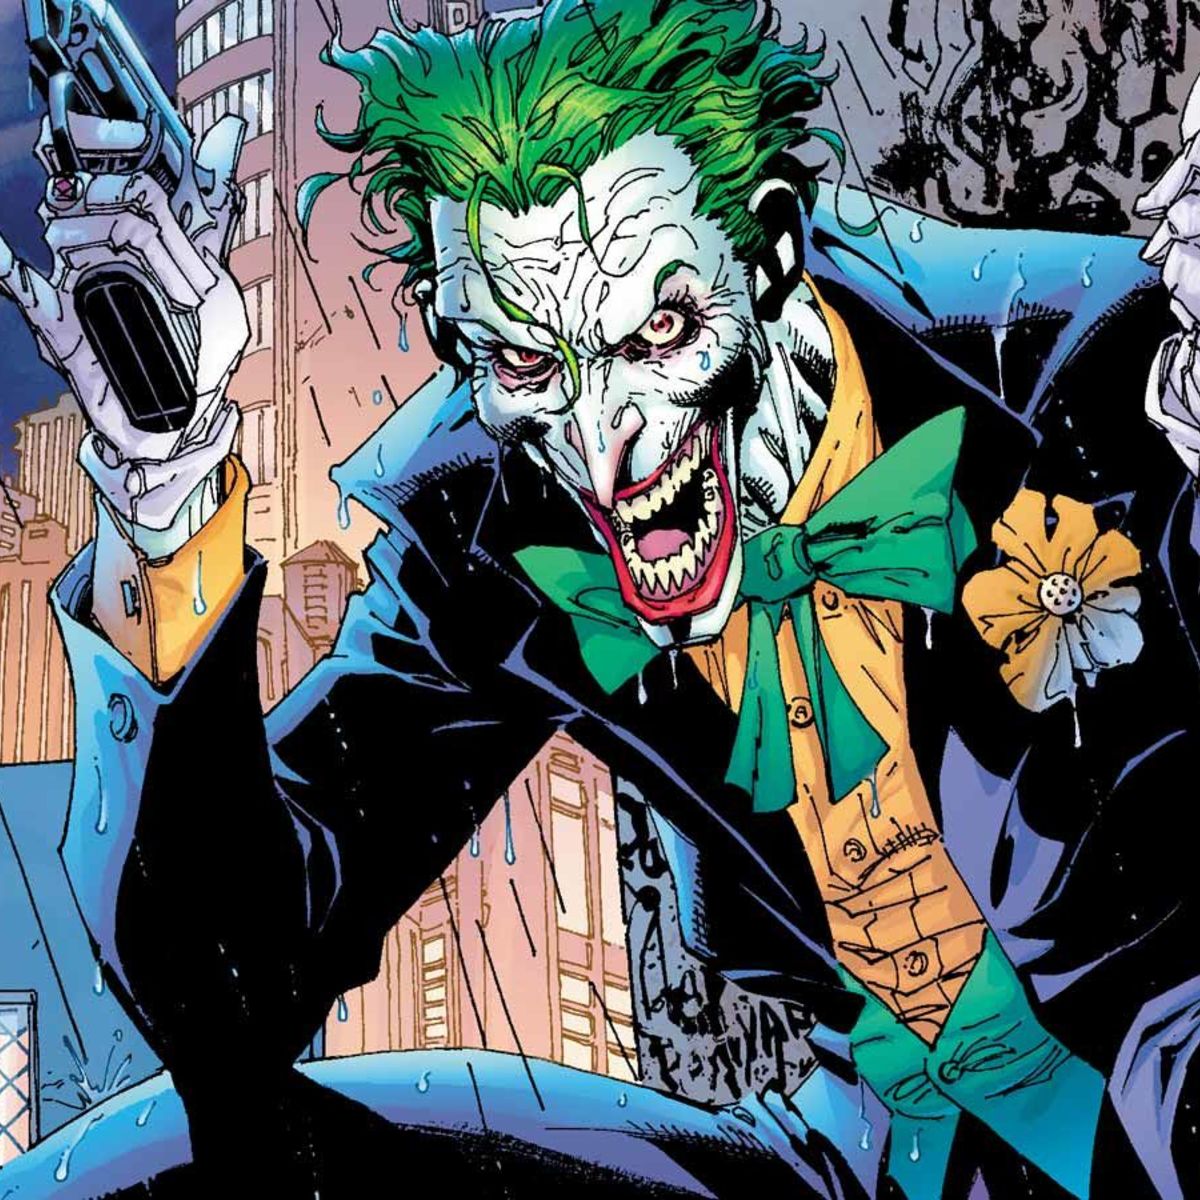 Former DC Entertainment president praises Joker, then gets run off ...